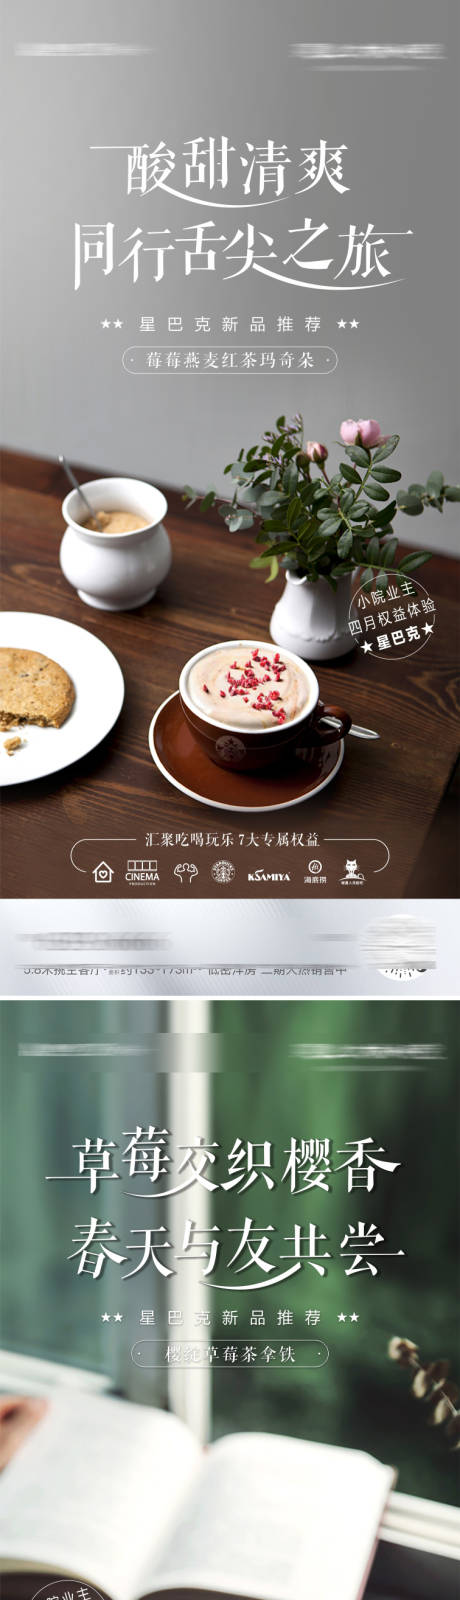 星巴克咖啡业主权益海报